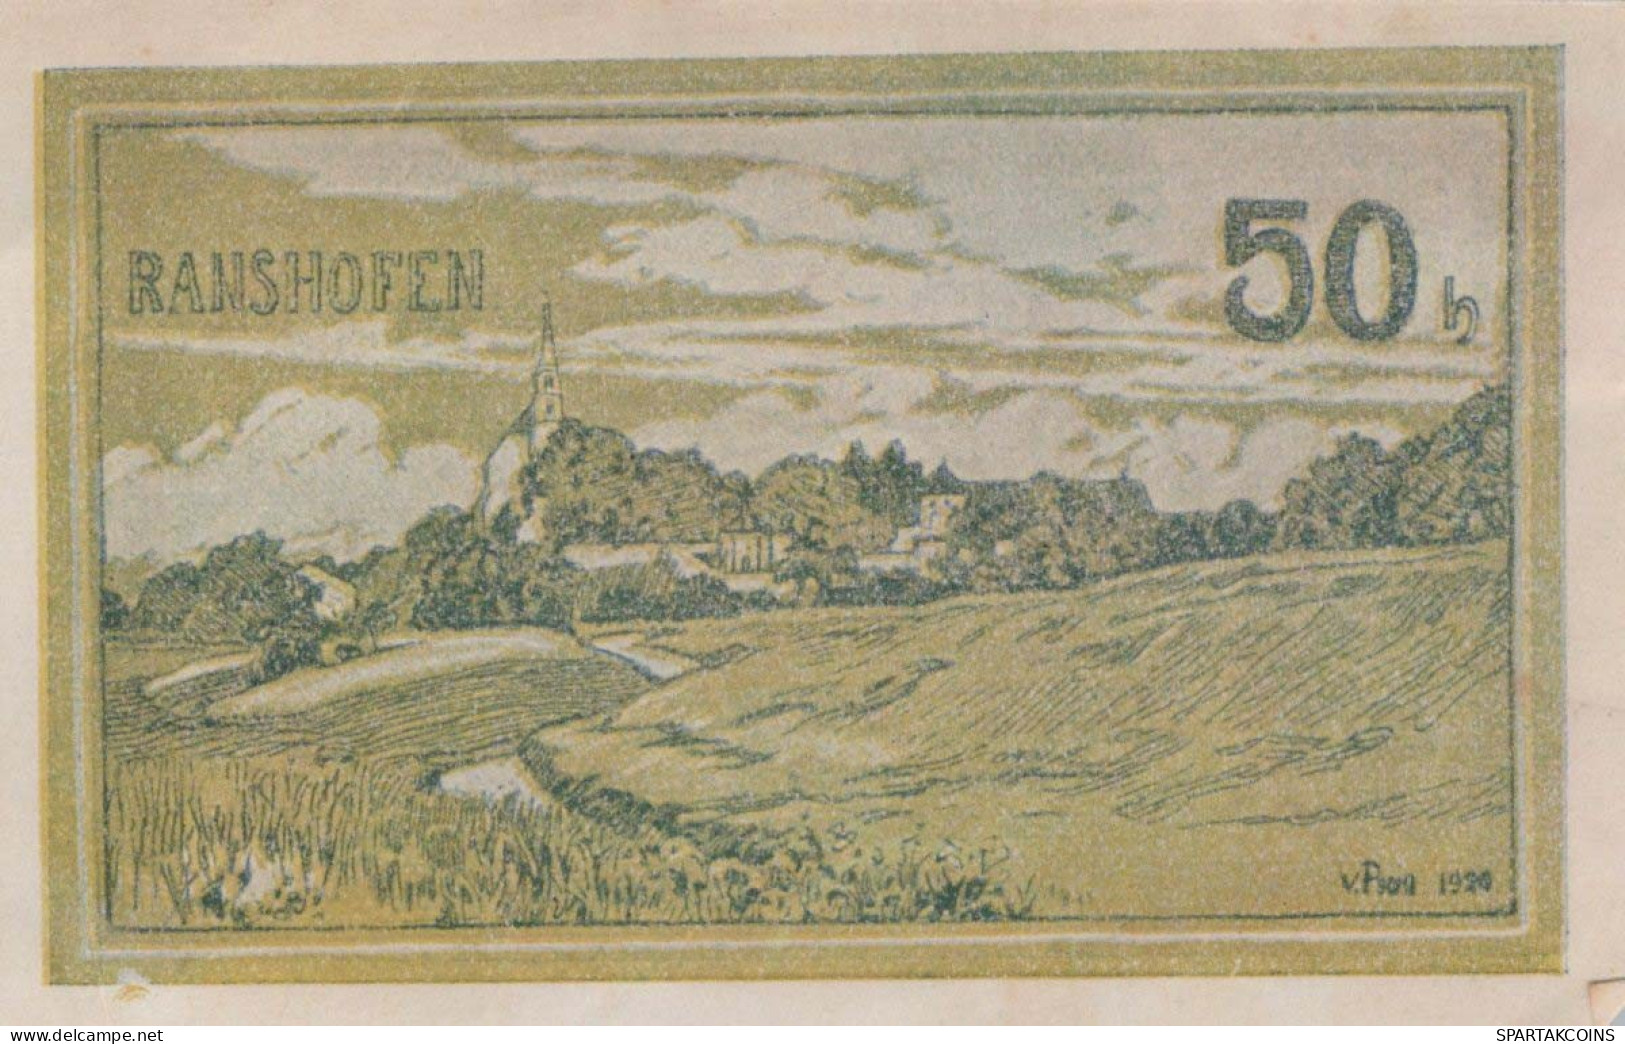 50 HELLER 1920 Stadt RANSHOFEN Oberösterreich Österreich Notgeld Banknote #PE524 - [11] Emissioni Locali